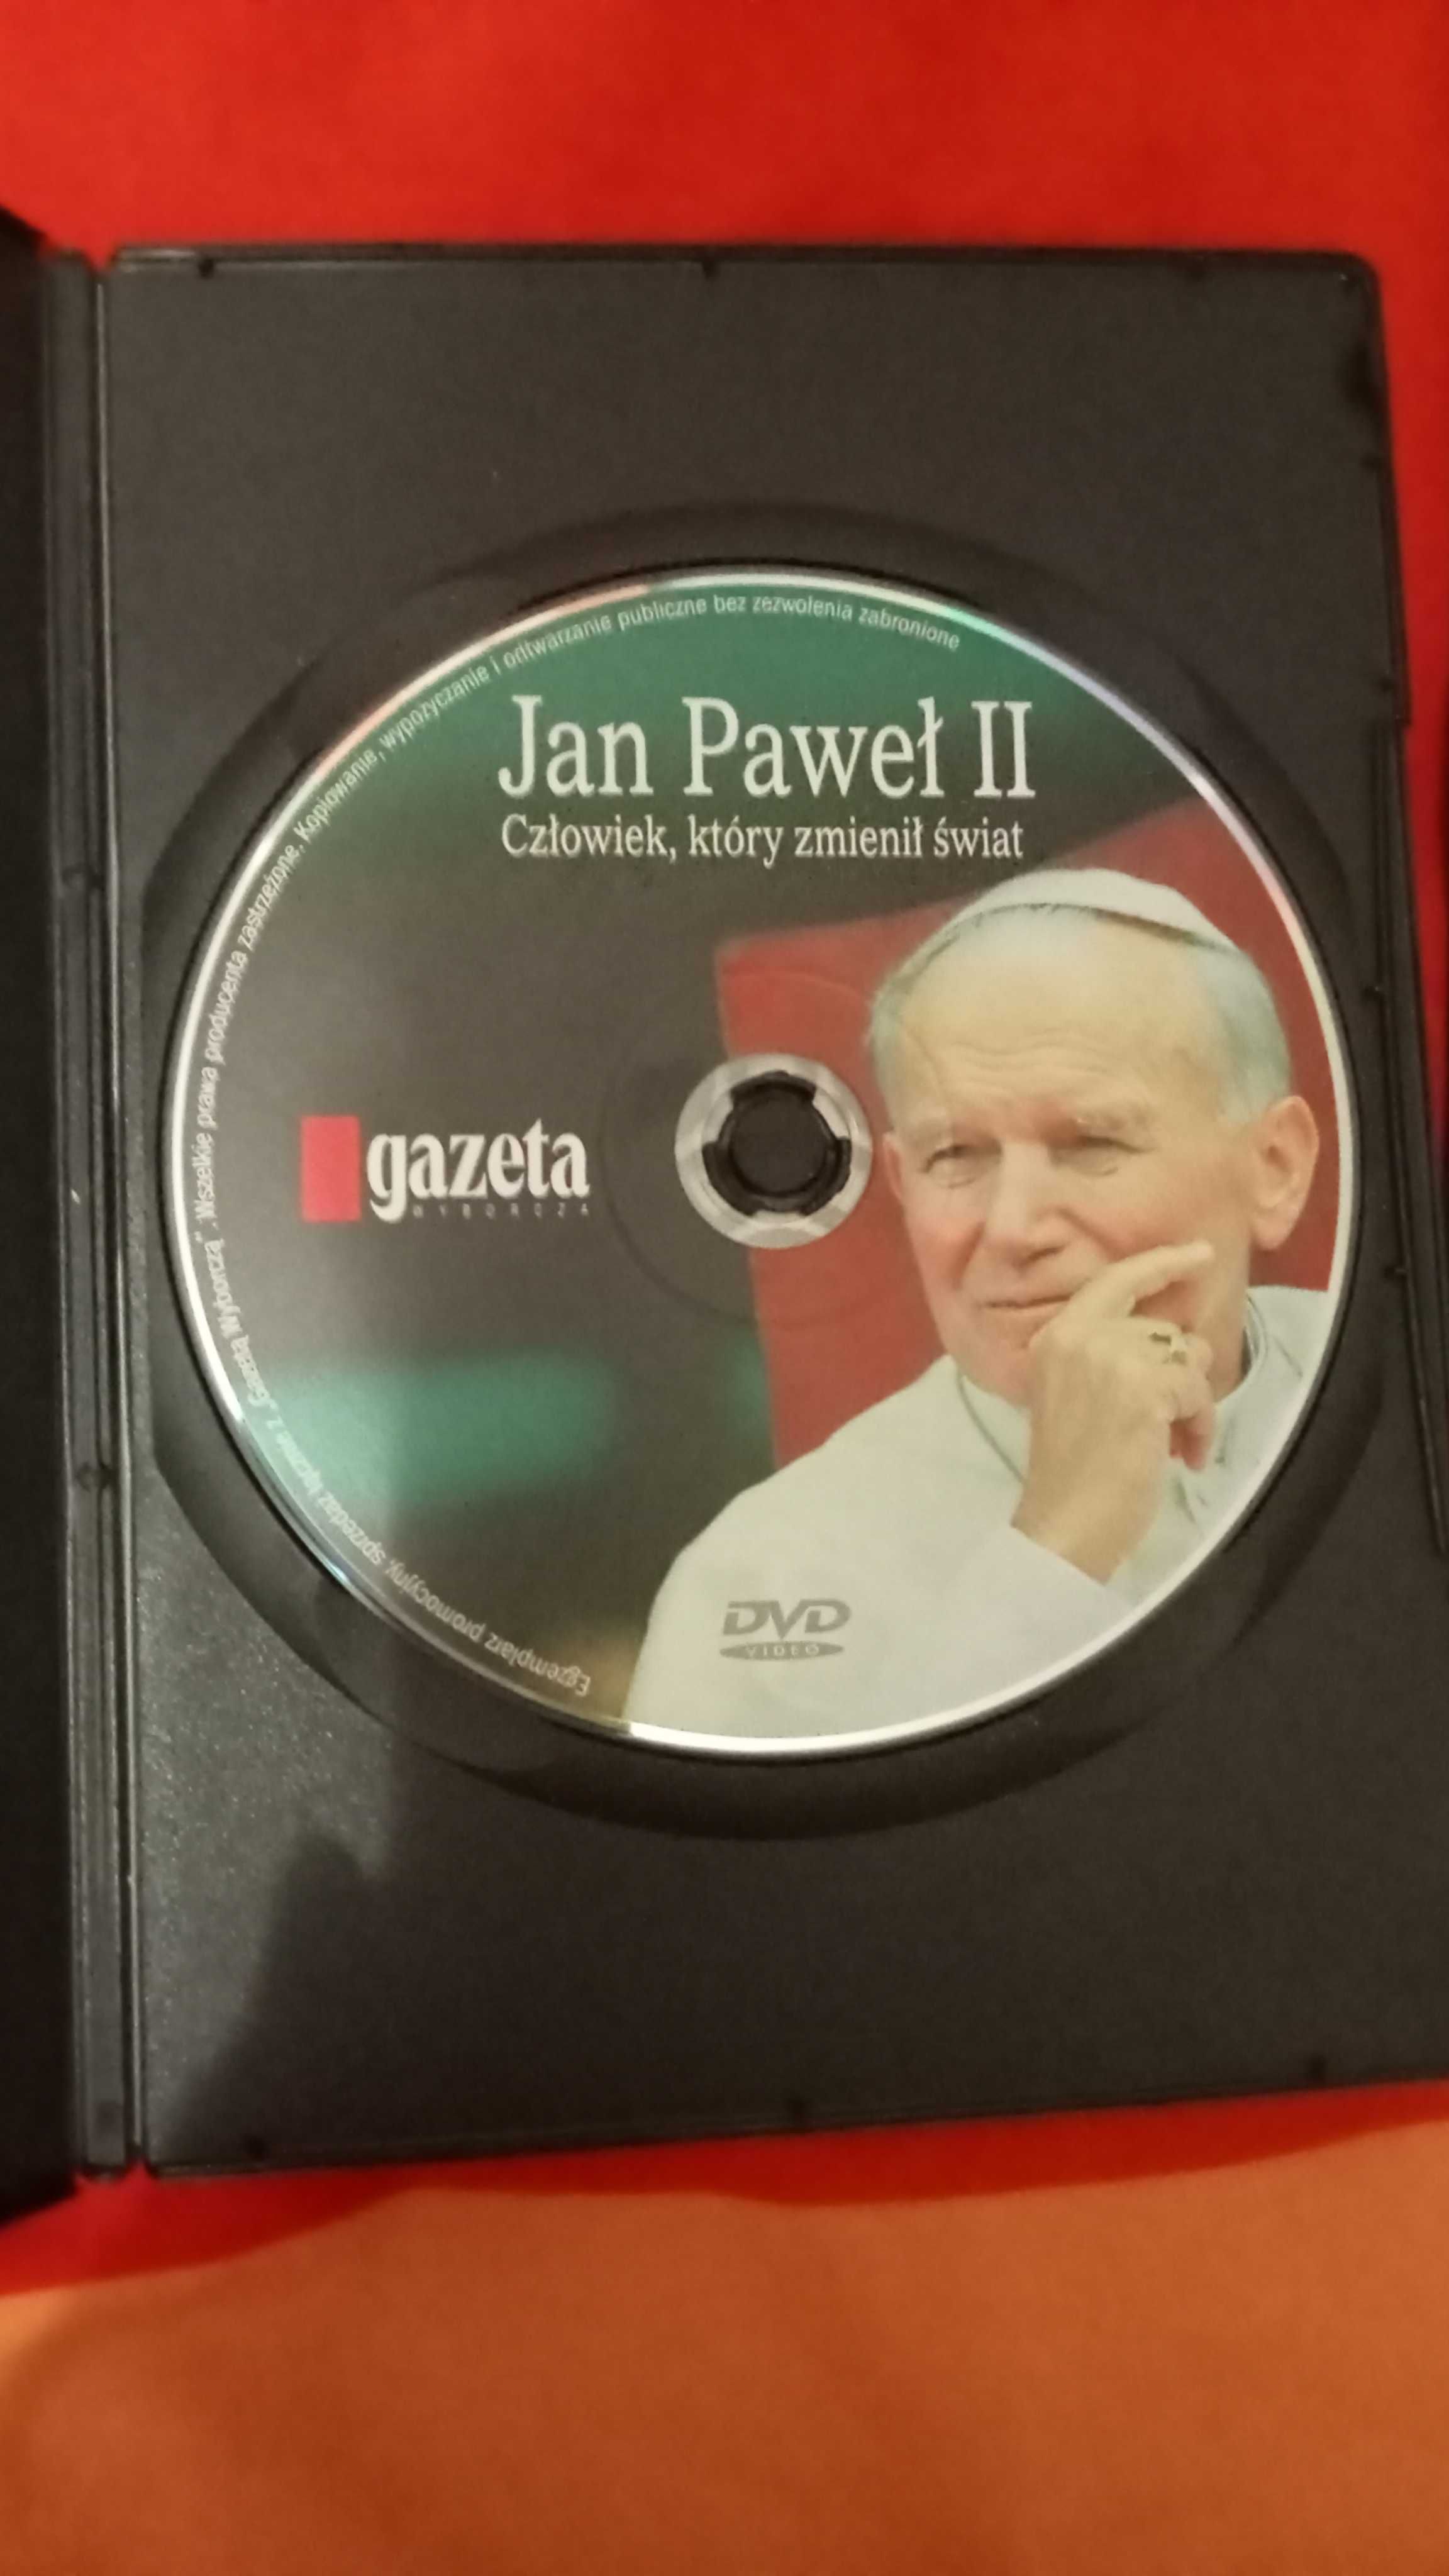 Jan Paweł II na Dvd, trzy tytuły - 4 płyty